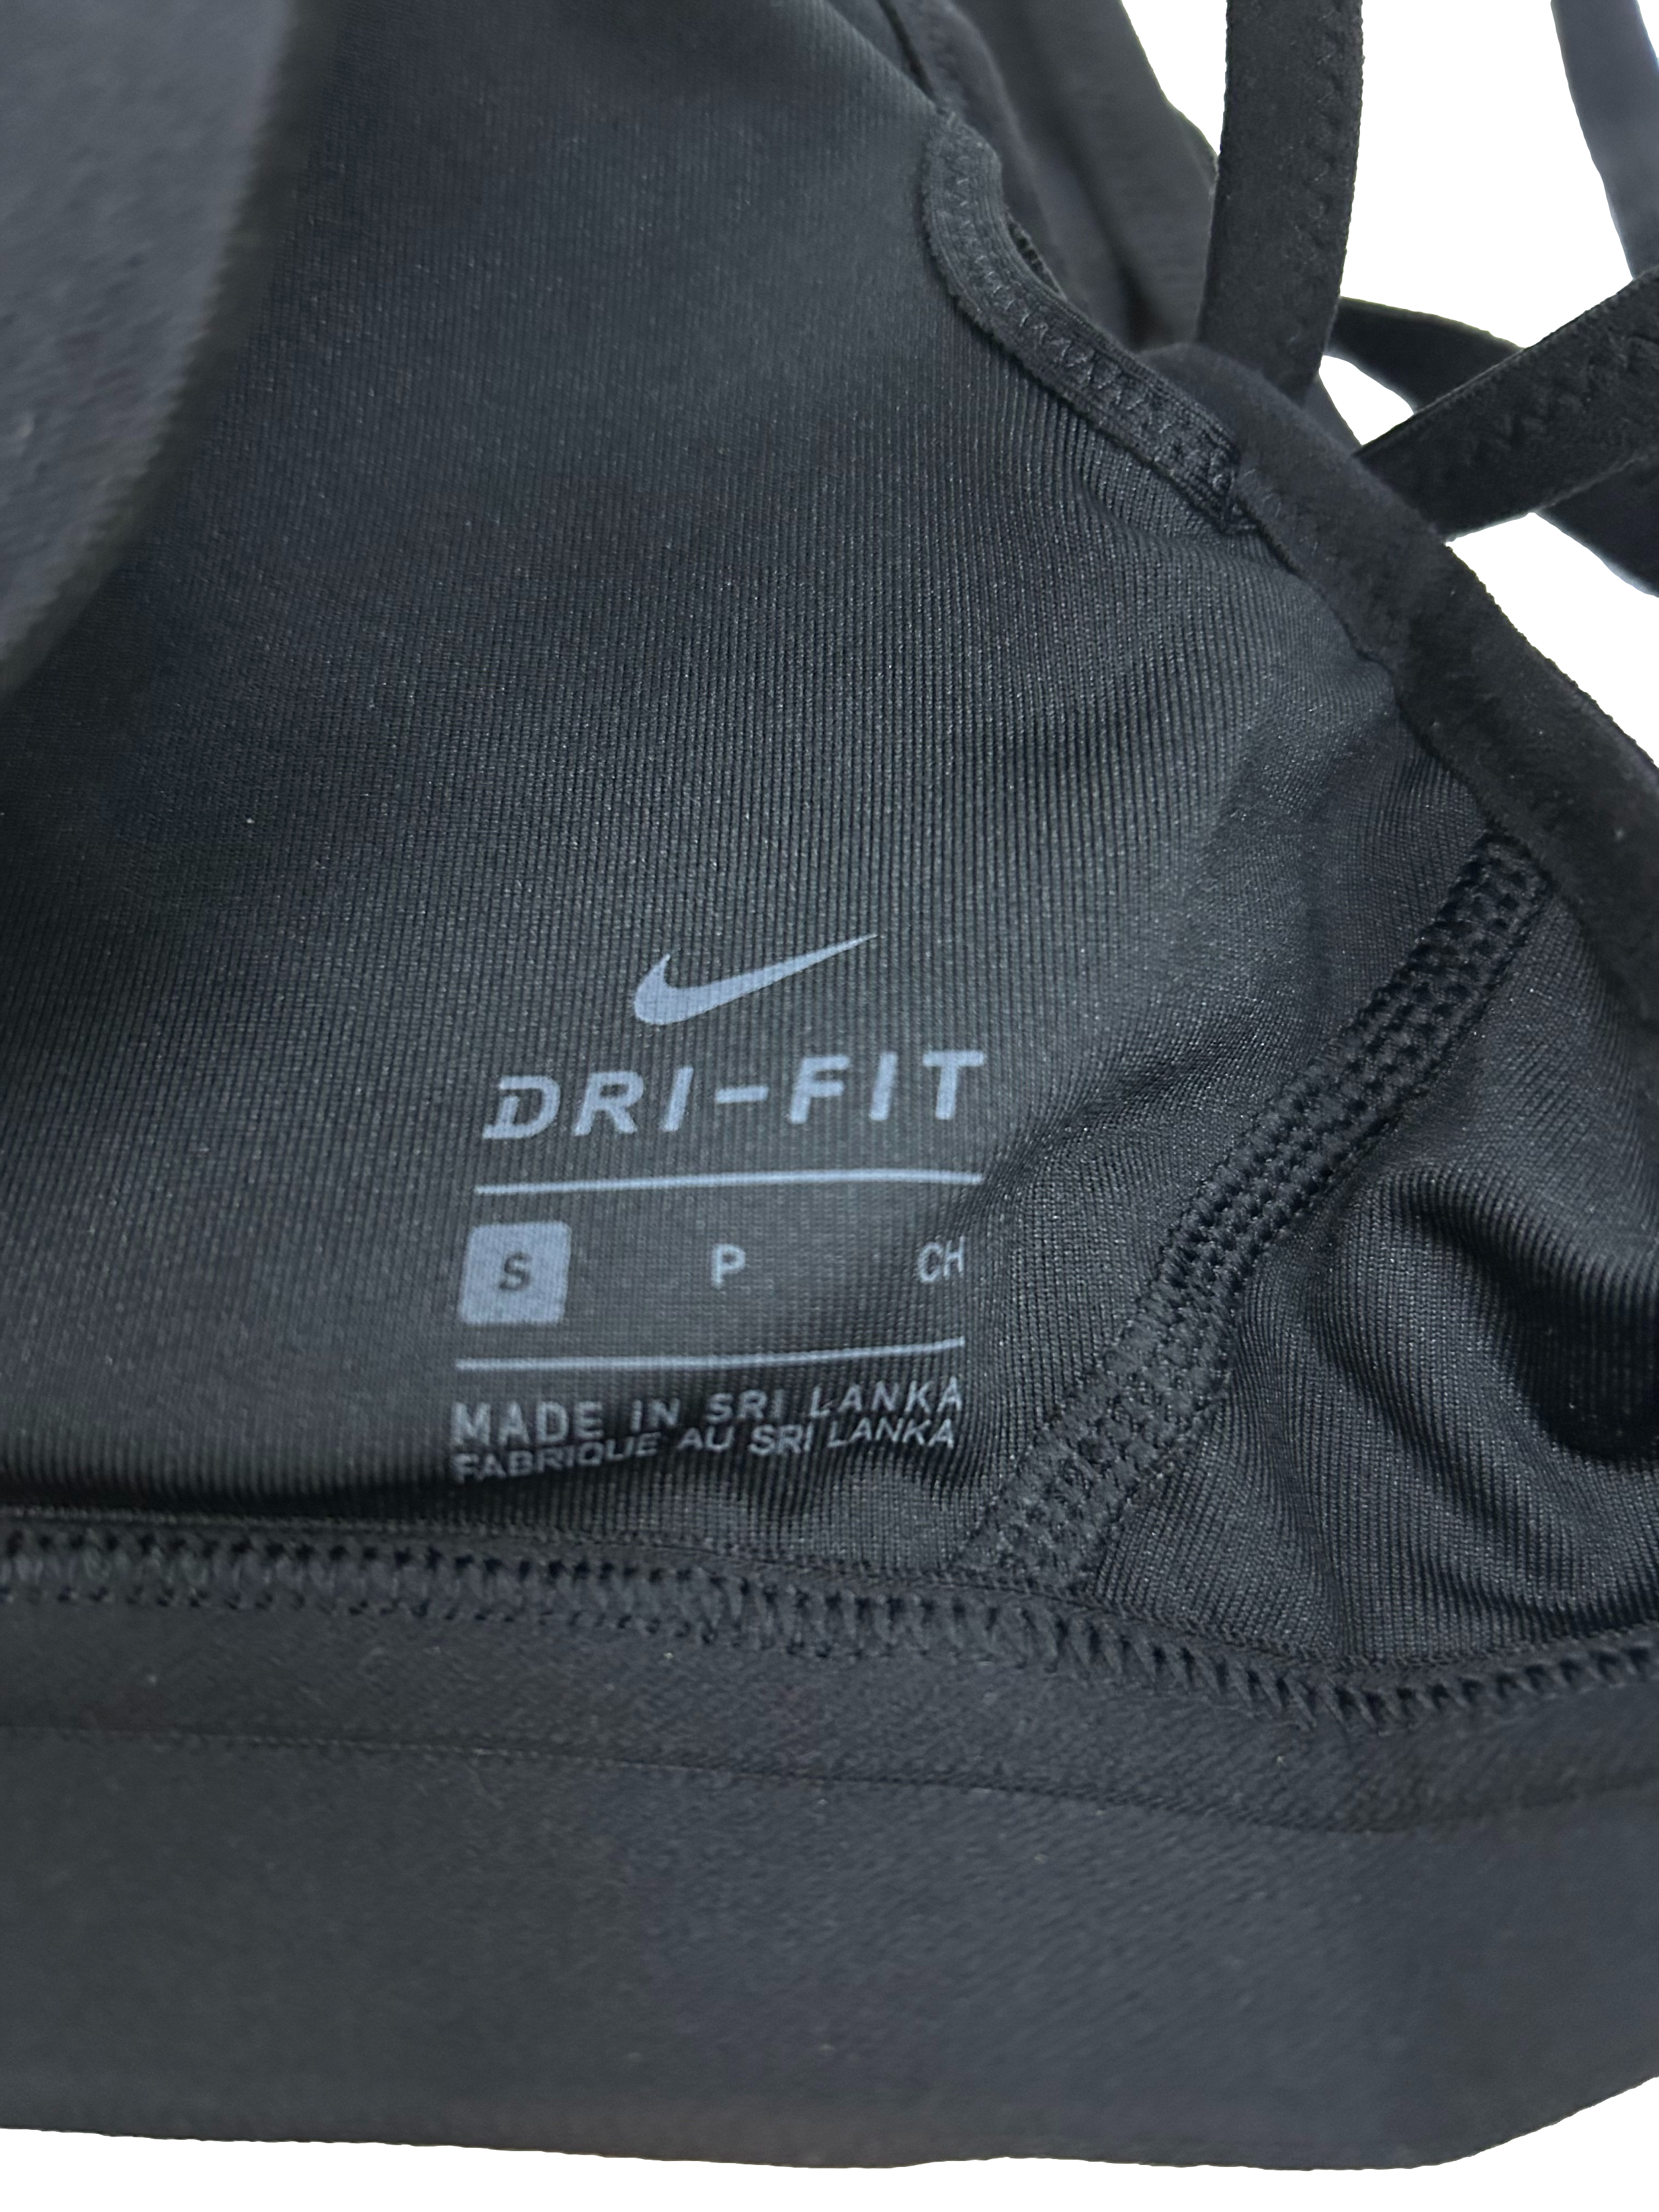 Ink Black Front Logo Dri-Fit Sports Bra